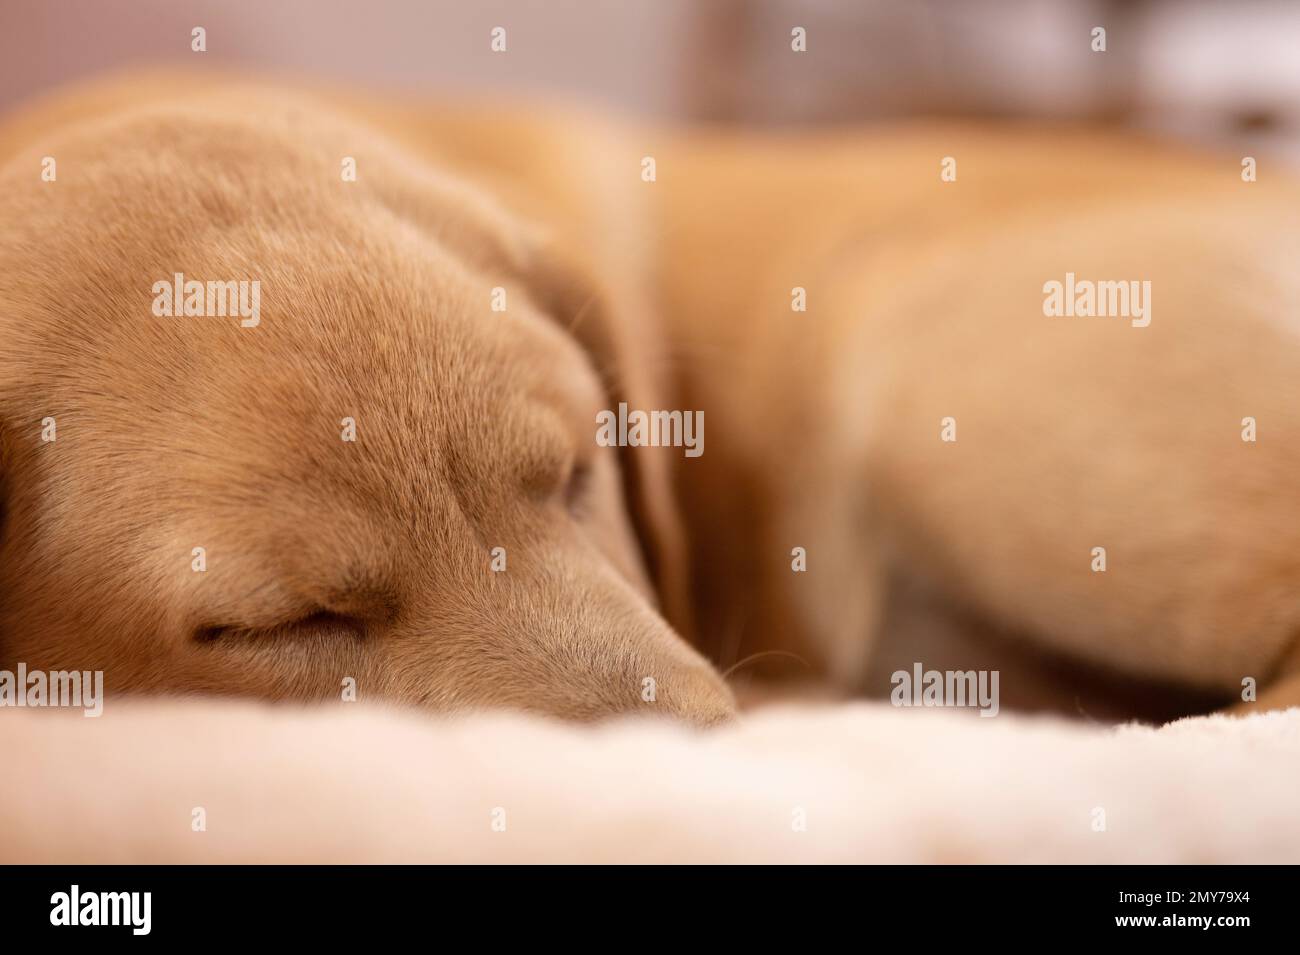 Ritratto doggy addormentato su fondo pavimento morbido Foto Stock